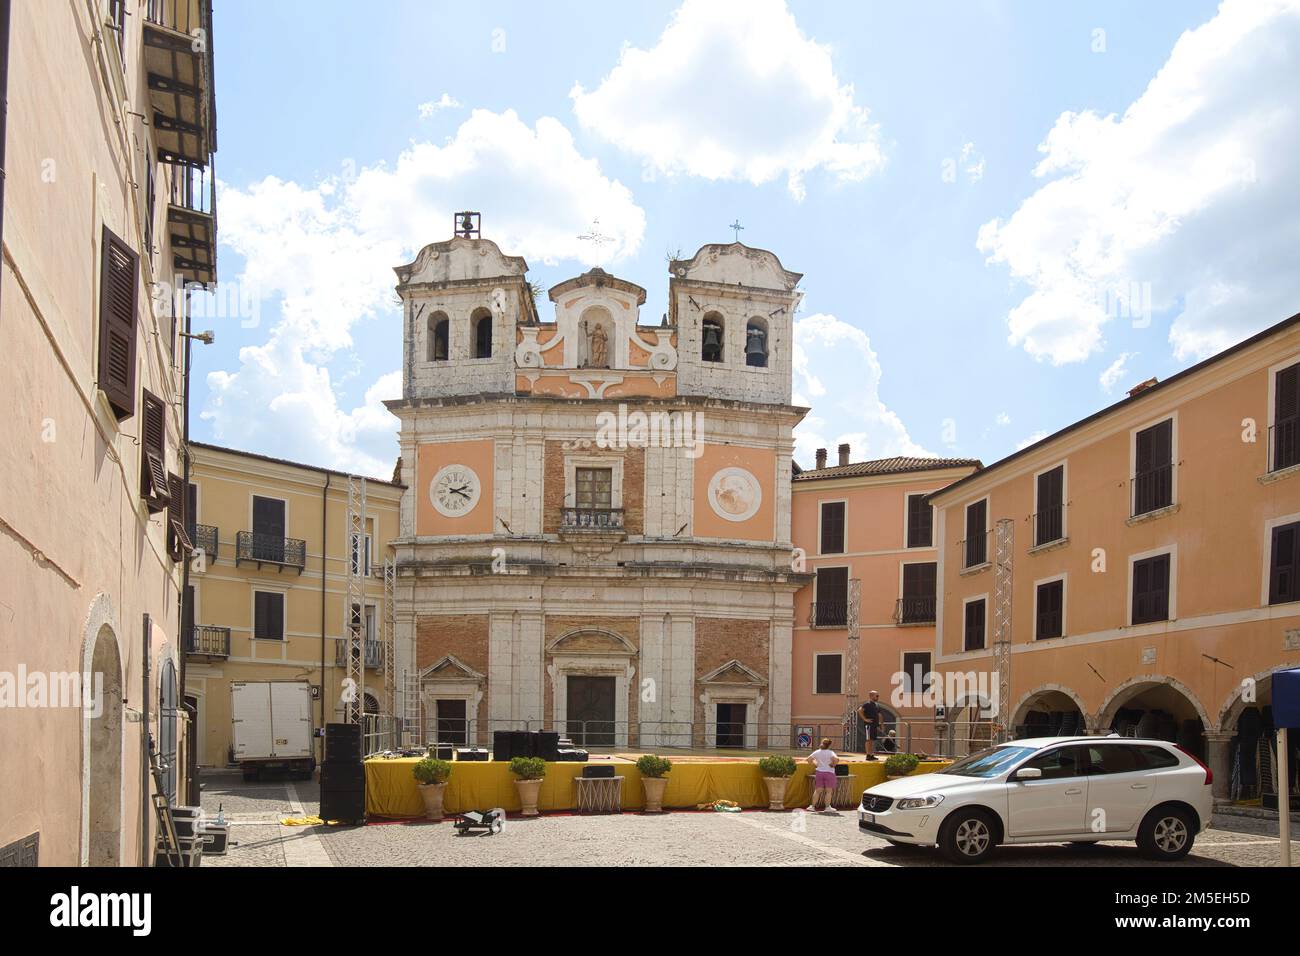 Atina, Frosinone, Italia - 10 de agosto de 2022: Trabajo escénico frente a la Chiesa 'Cattedrale' Santa Maria Assunta. Foto de stock